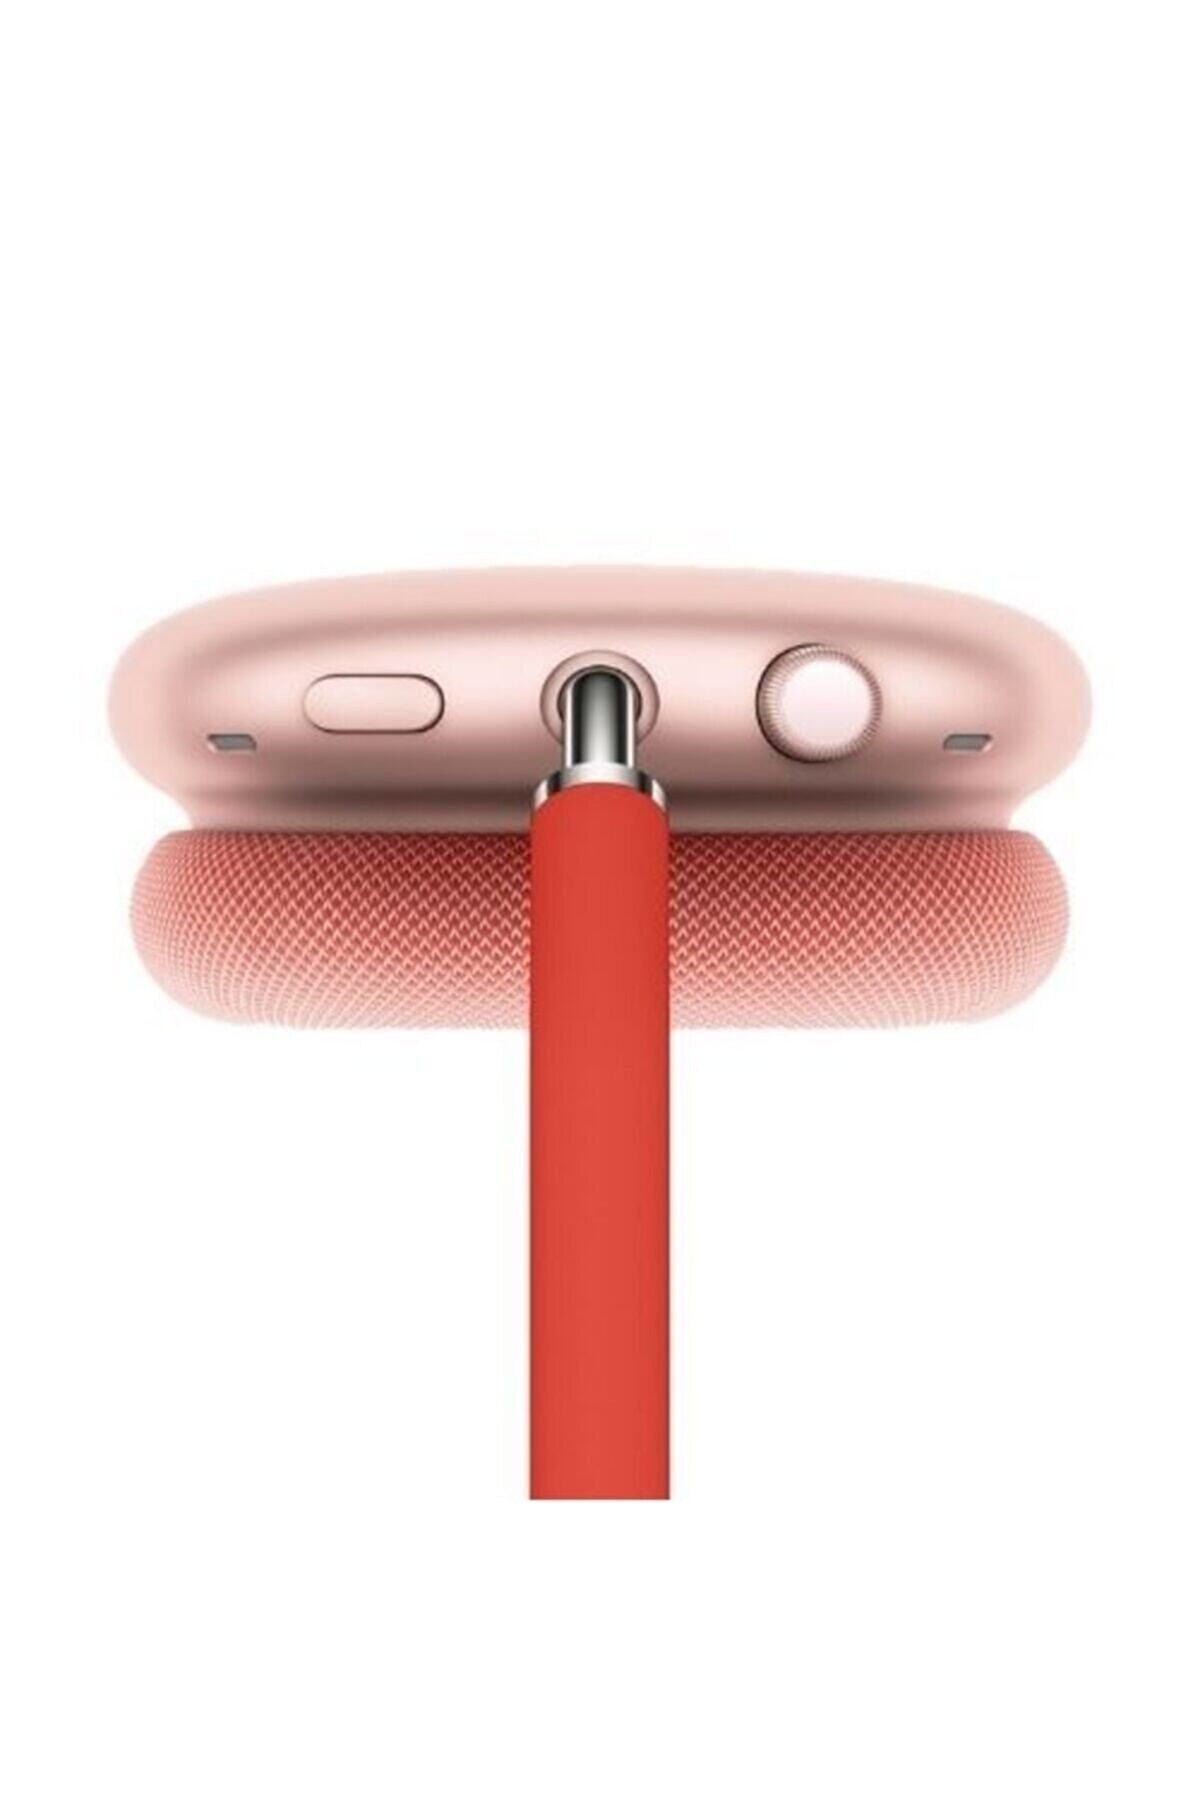 HızlıcaAl Bluetooth Kulak Üstü Kablosuz Mikrofonlu Kulaklık P9 Plus Wireless, Kırmızı